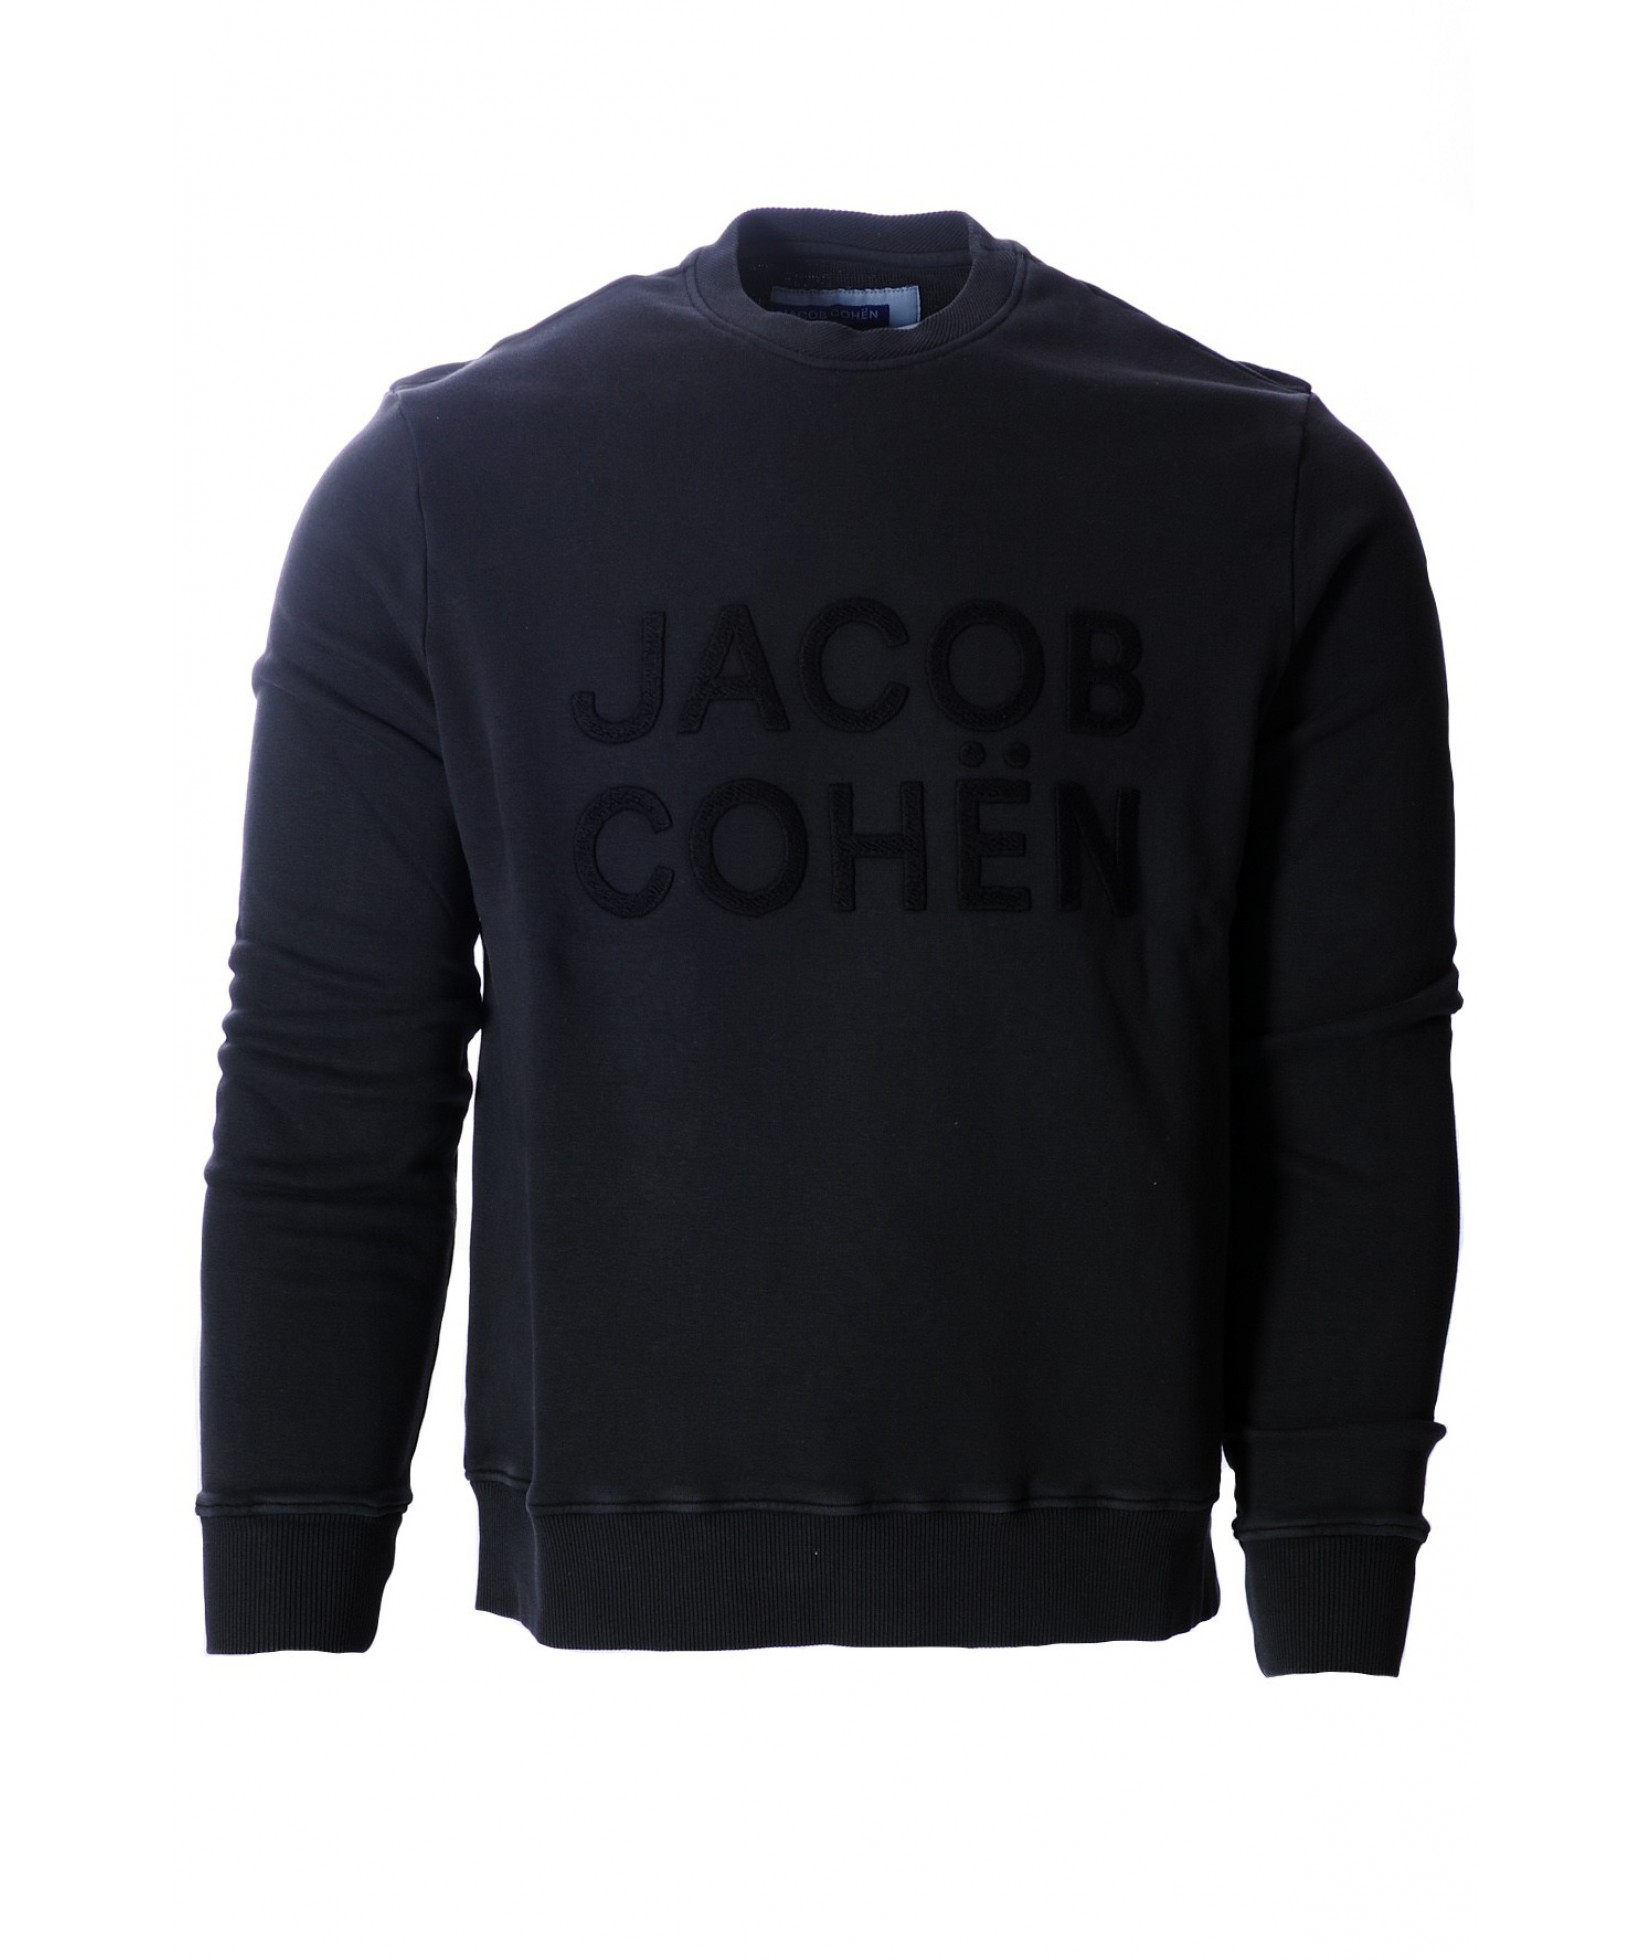 Jacob Cohën sweater black (35603)